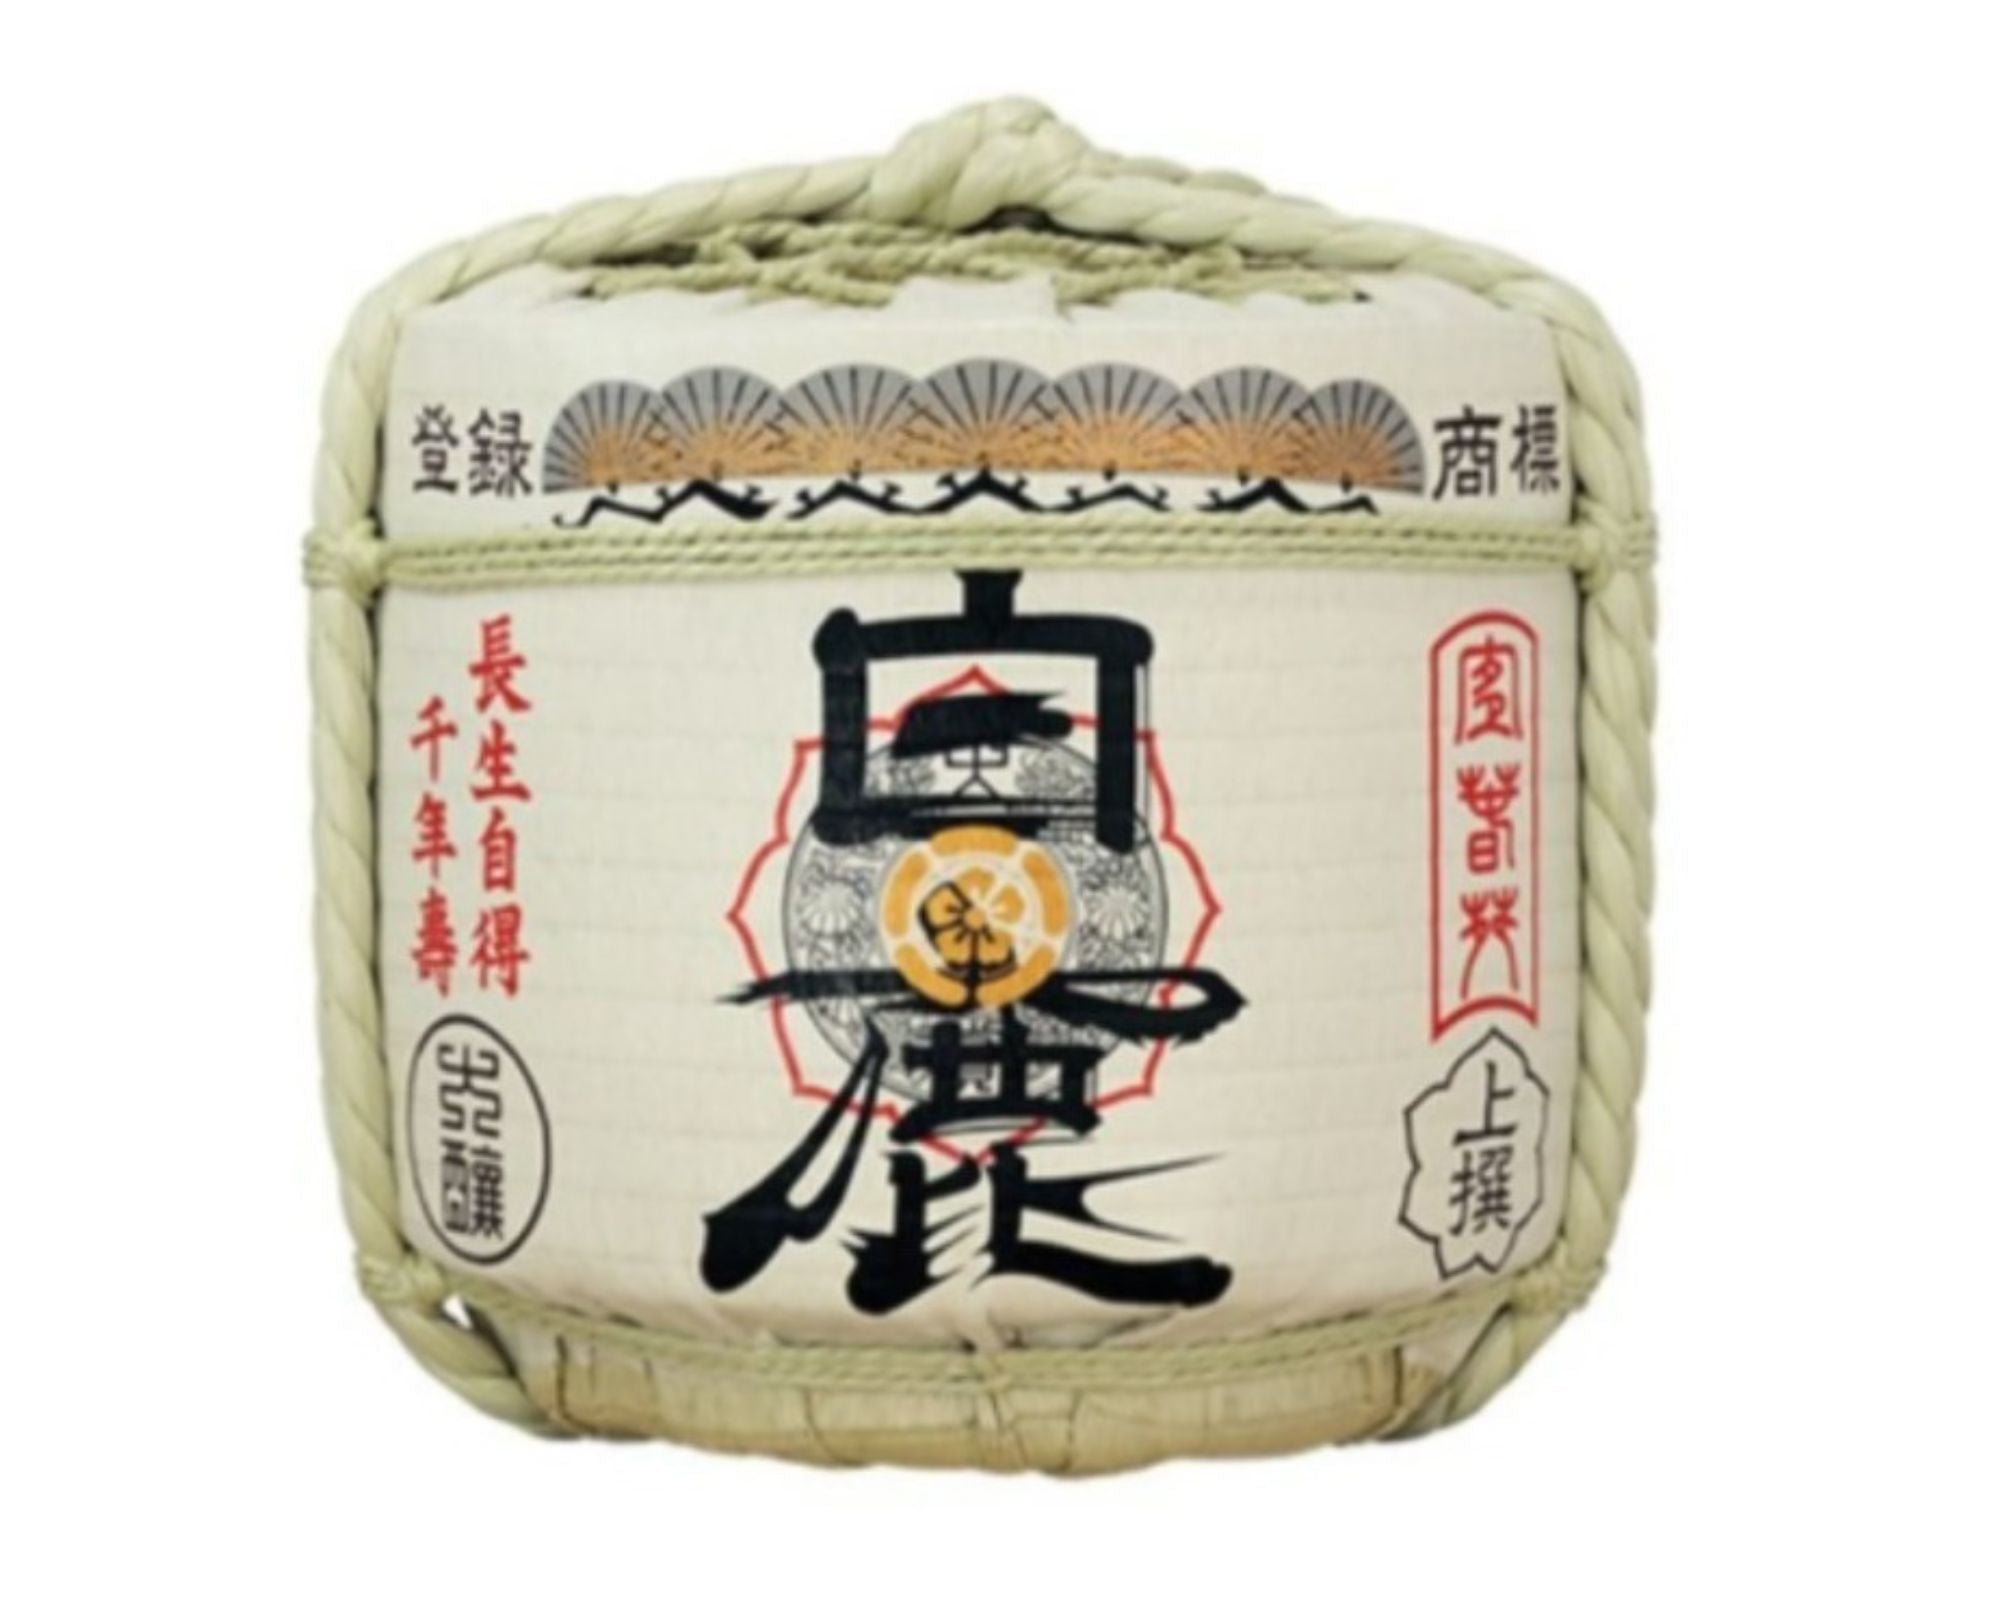 Sake Hakushika Josen Komotaru 1,8L